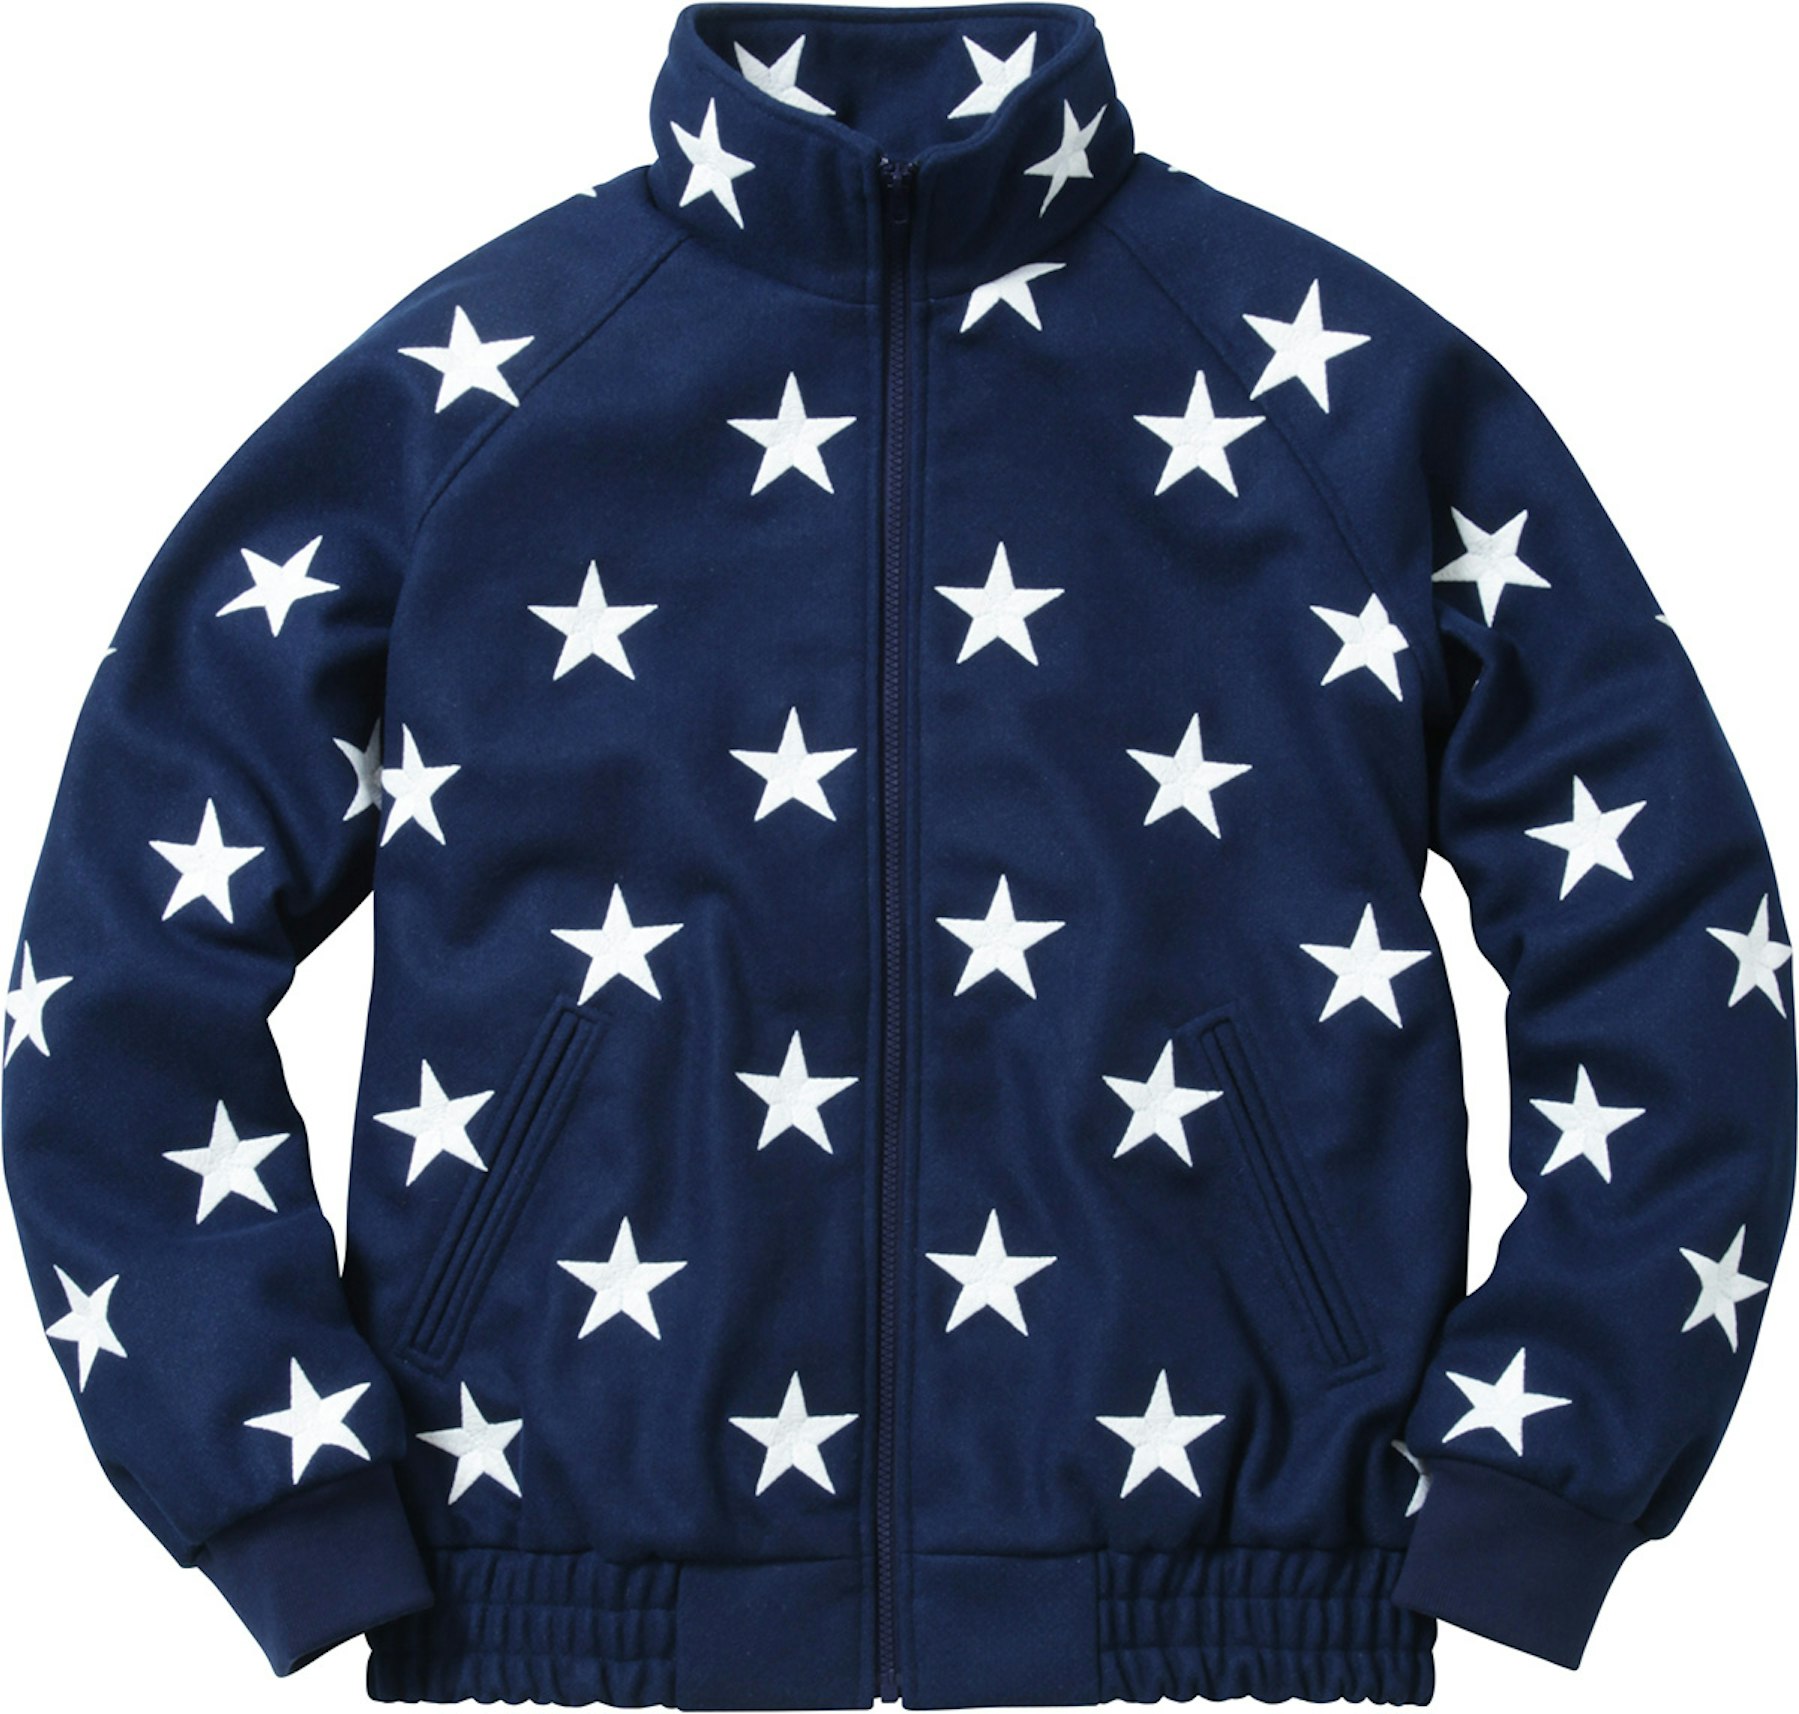 Tidlig teenager beundring Supreme Stars Zip Stadium Jacket Navy - FW16 Men's - US